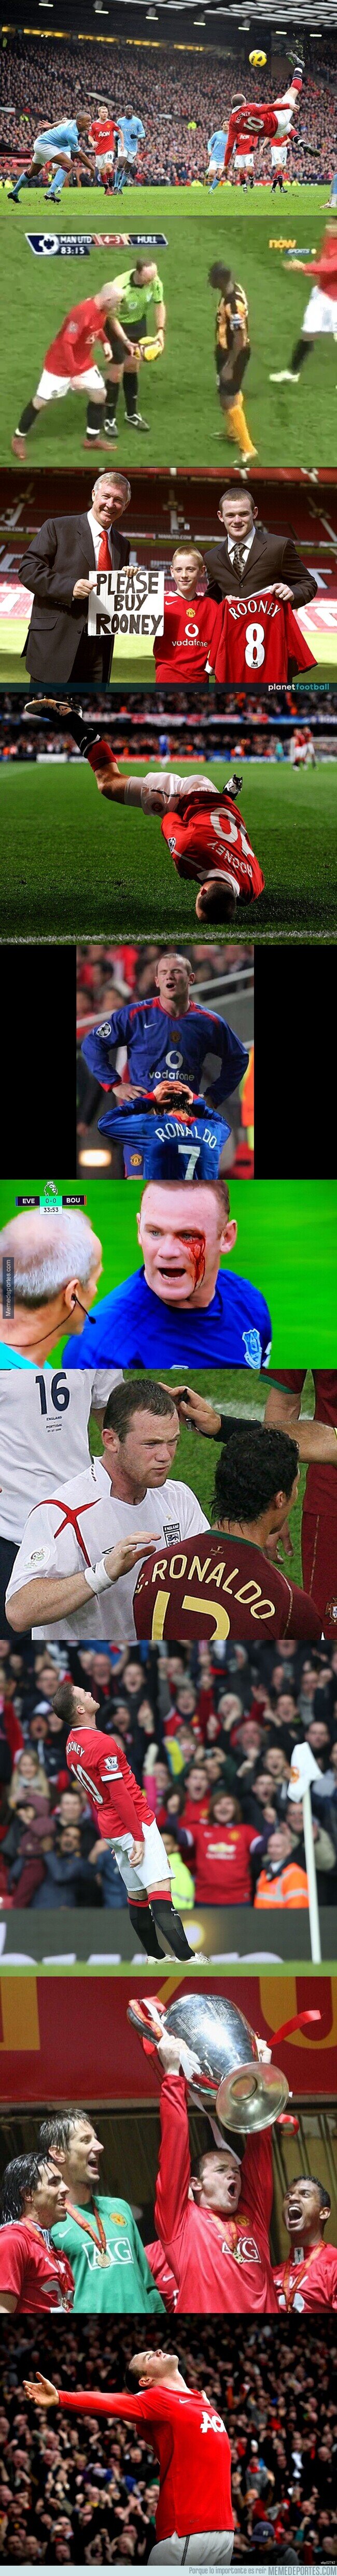 1125458 - El Gran Wayne Rooney en imágenes. Vaya carrera.